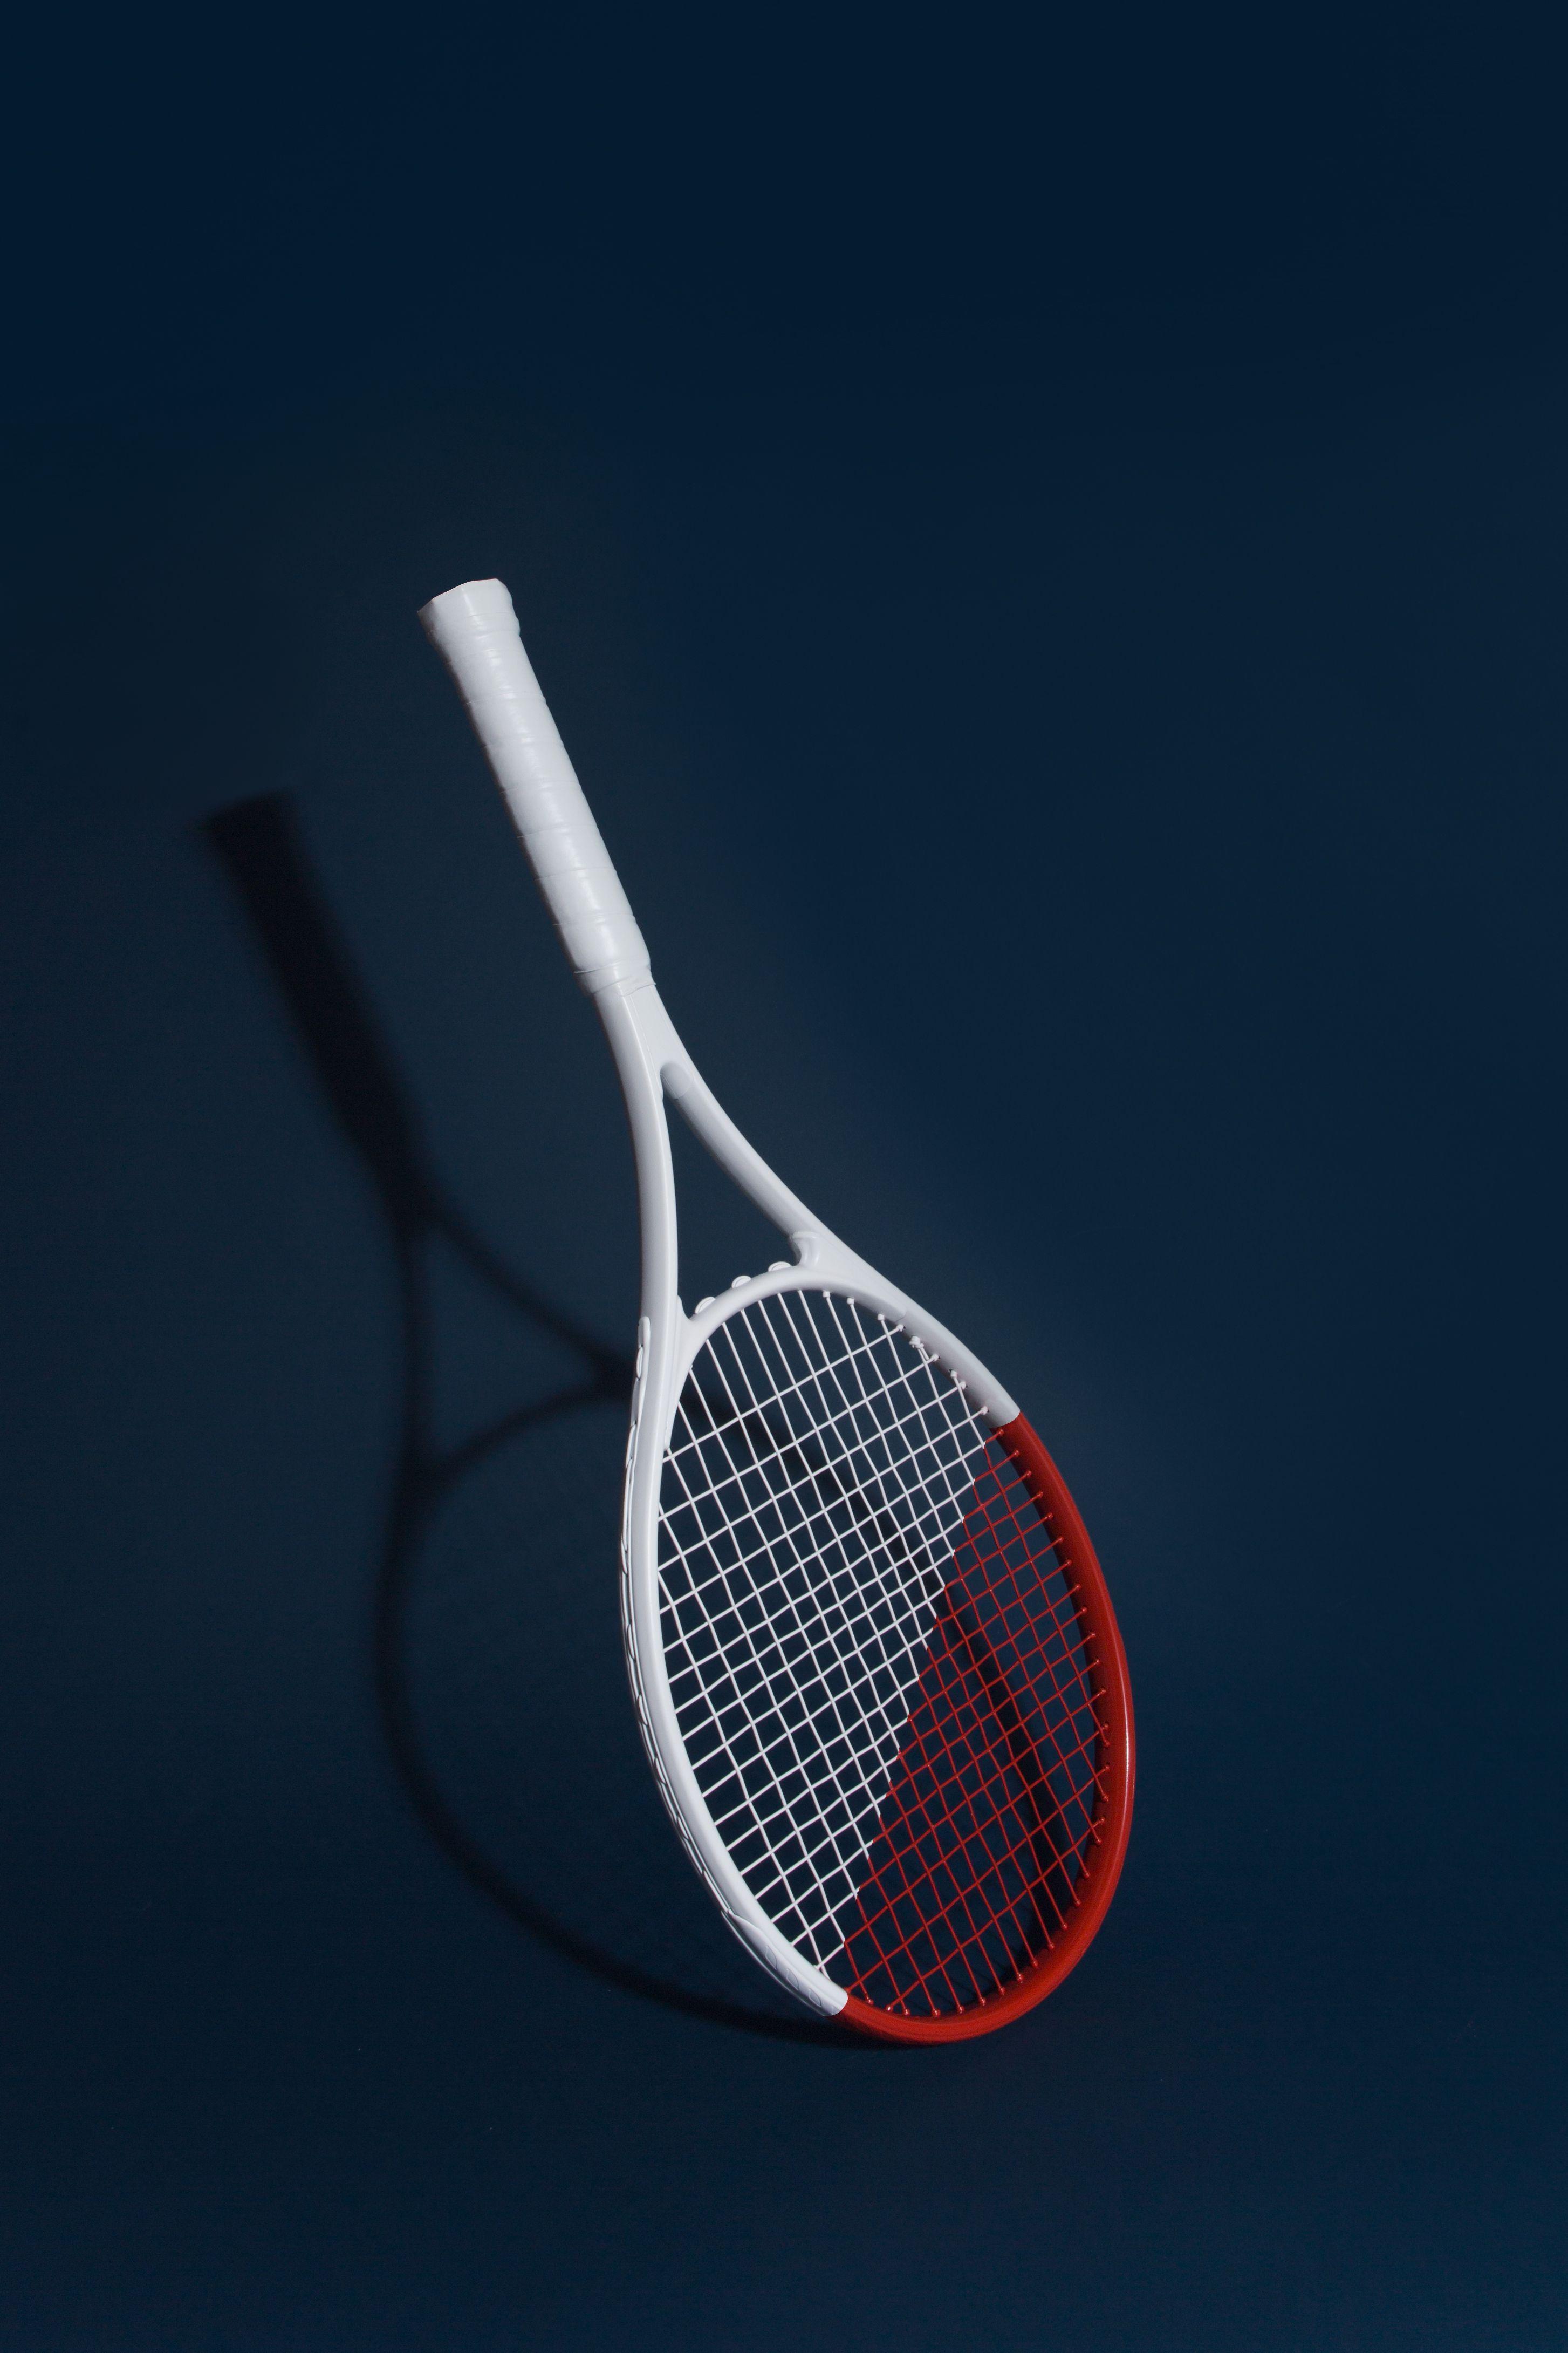 Premium Vector | Tennis vector raket clay court wallpaper background